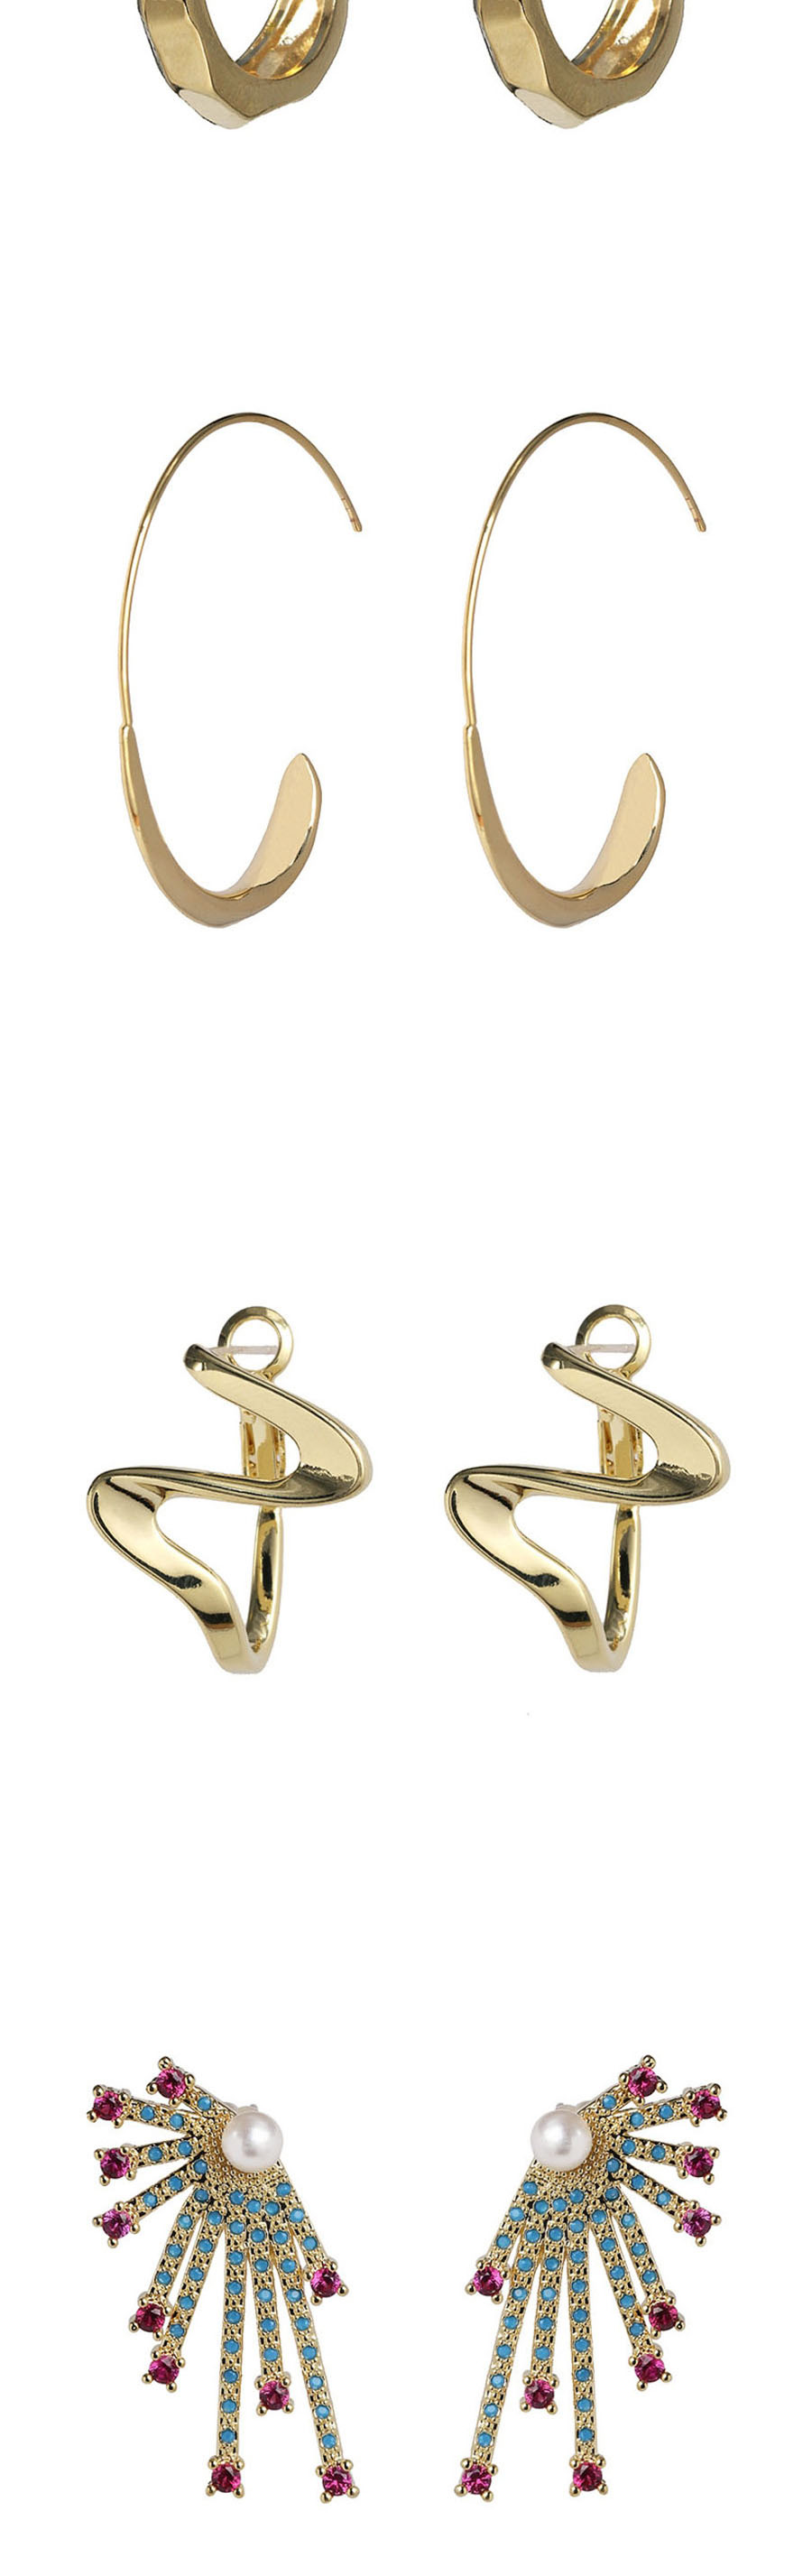 Fashion Golden Alloy Geometric Earrings,Drop Earrings